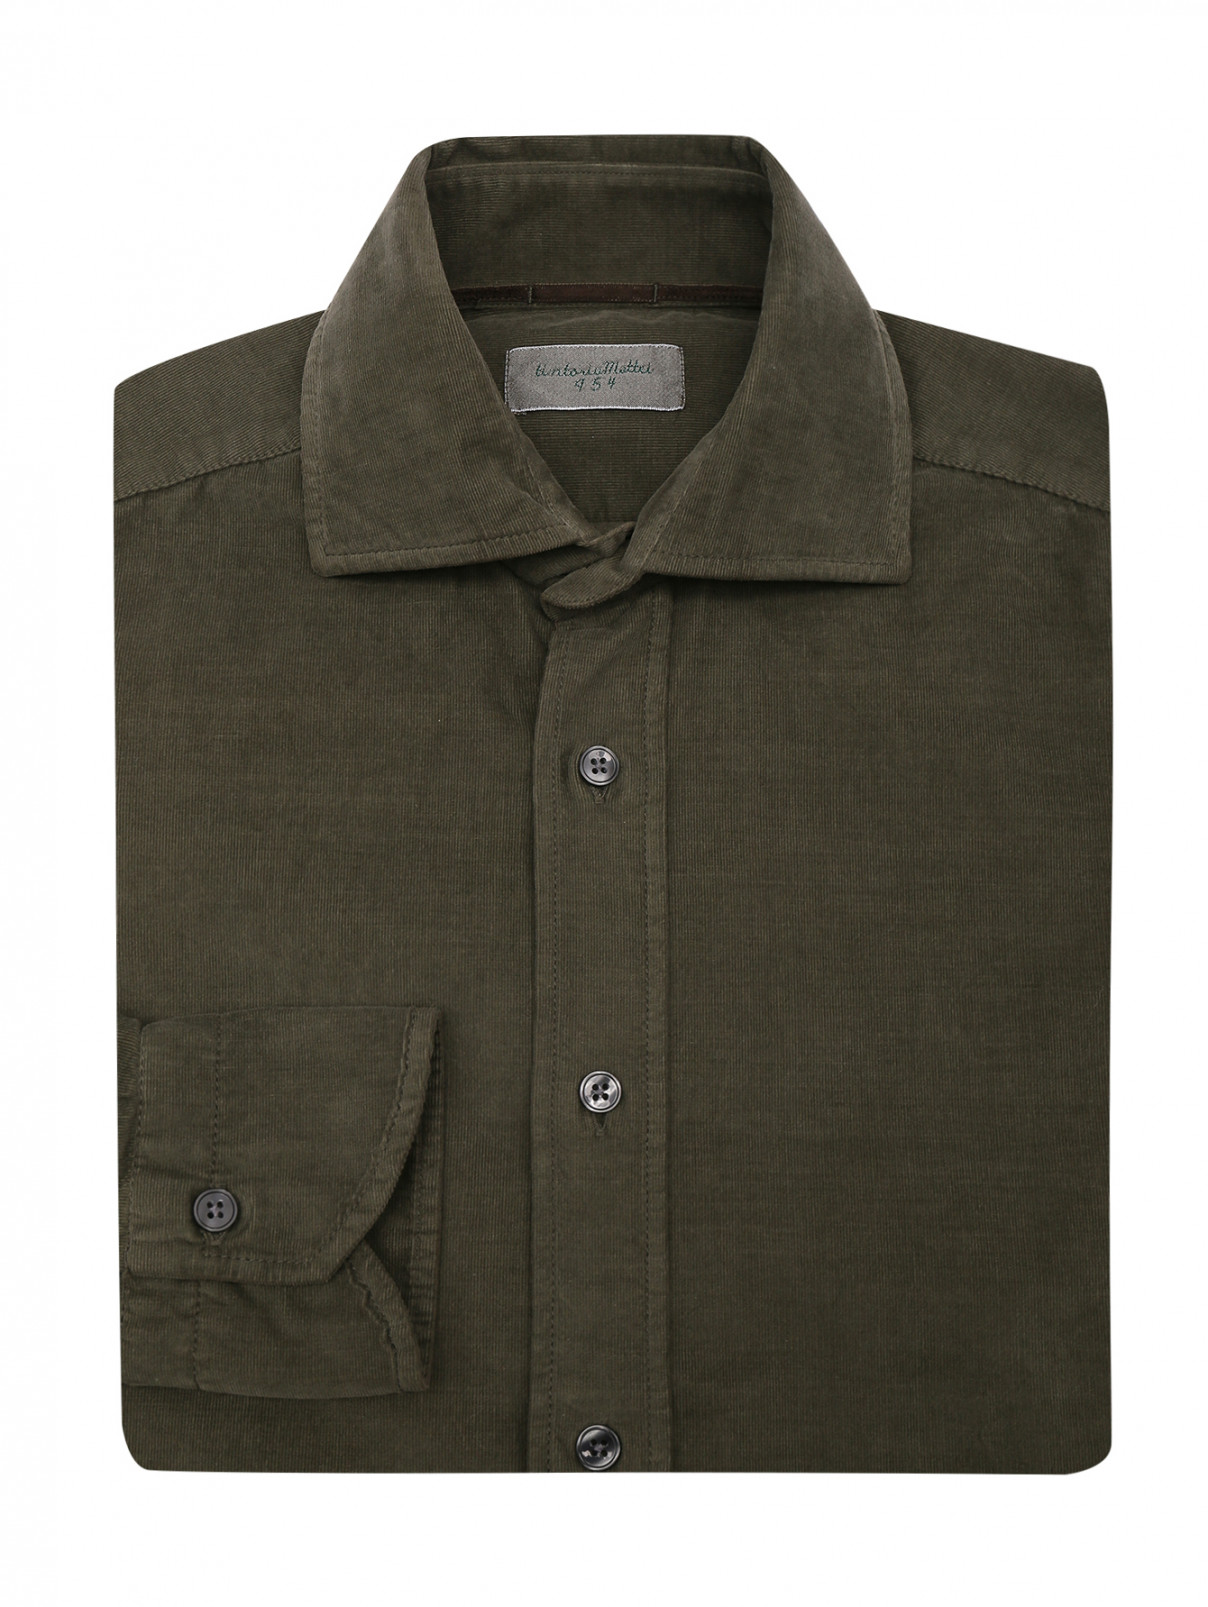 Вельветовая рубашка из хлопка Tintoria Mattei  –  Общий вид  – Цвет:  Зеленый